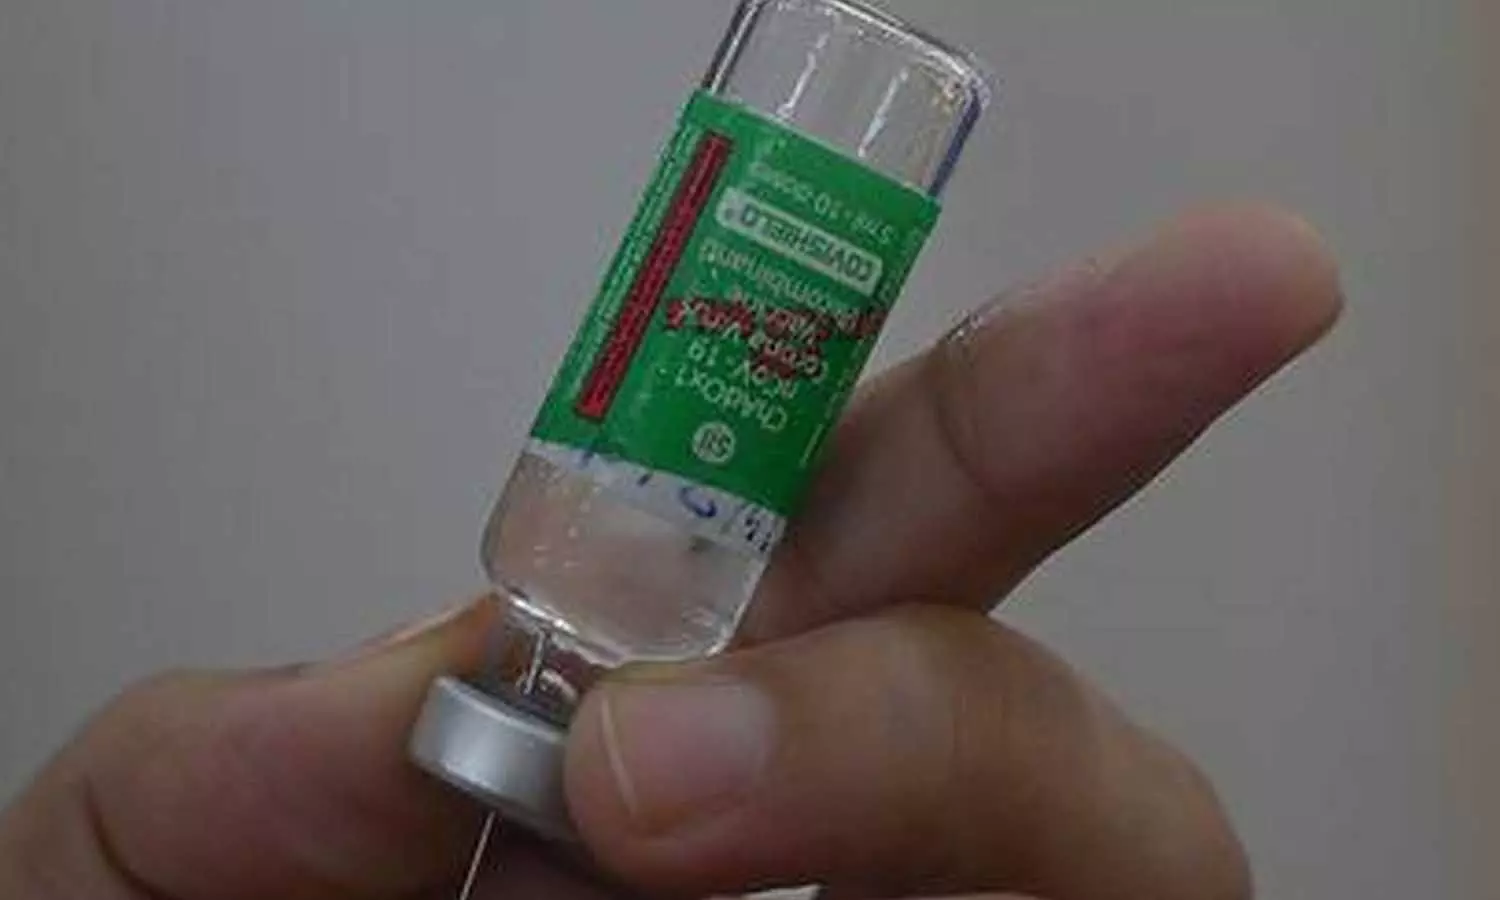 Covishield Vaccine Dose